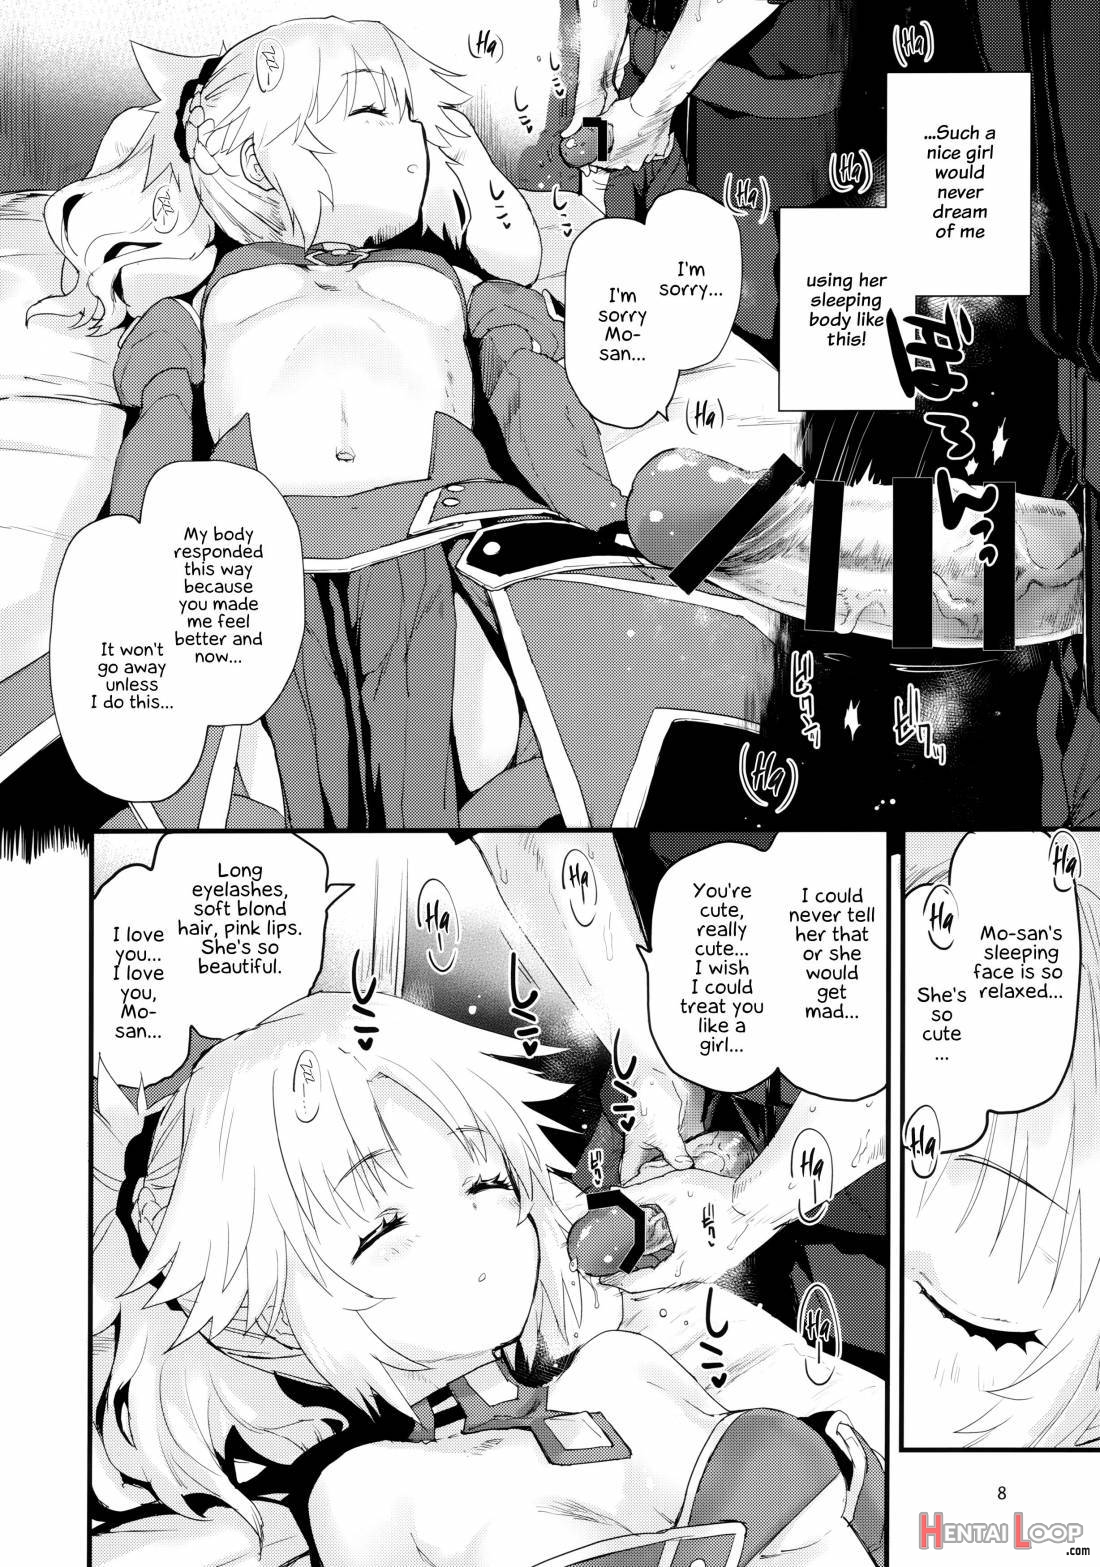 Gomen Ne Mo-san… page 7